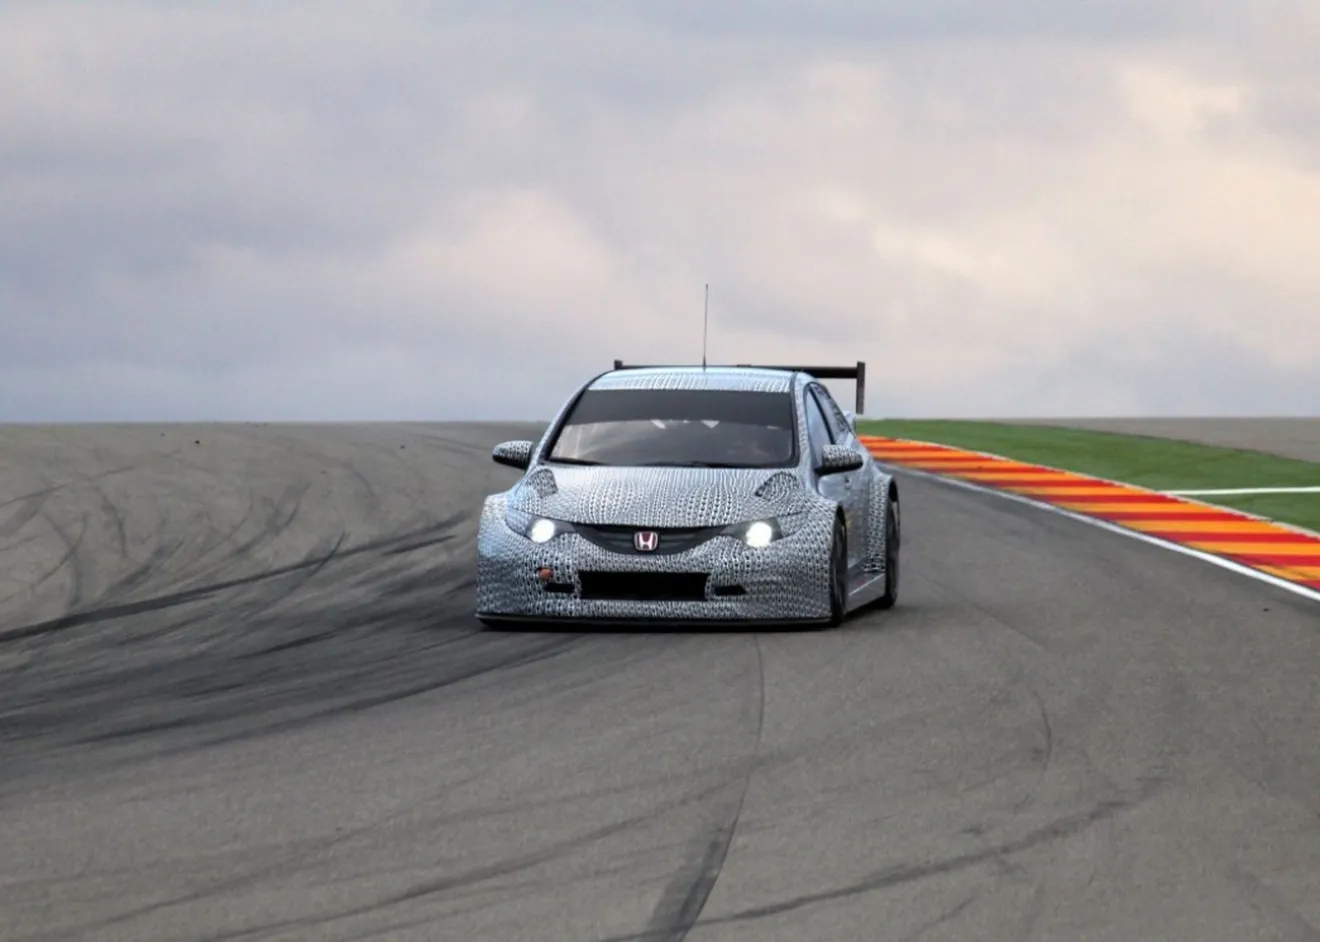 Honda Civic WTCC 2014, dispuesto a conseguir más victorias